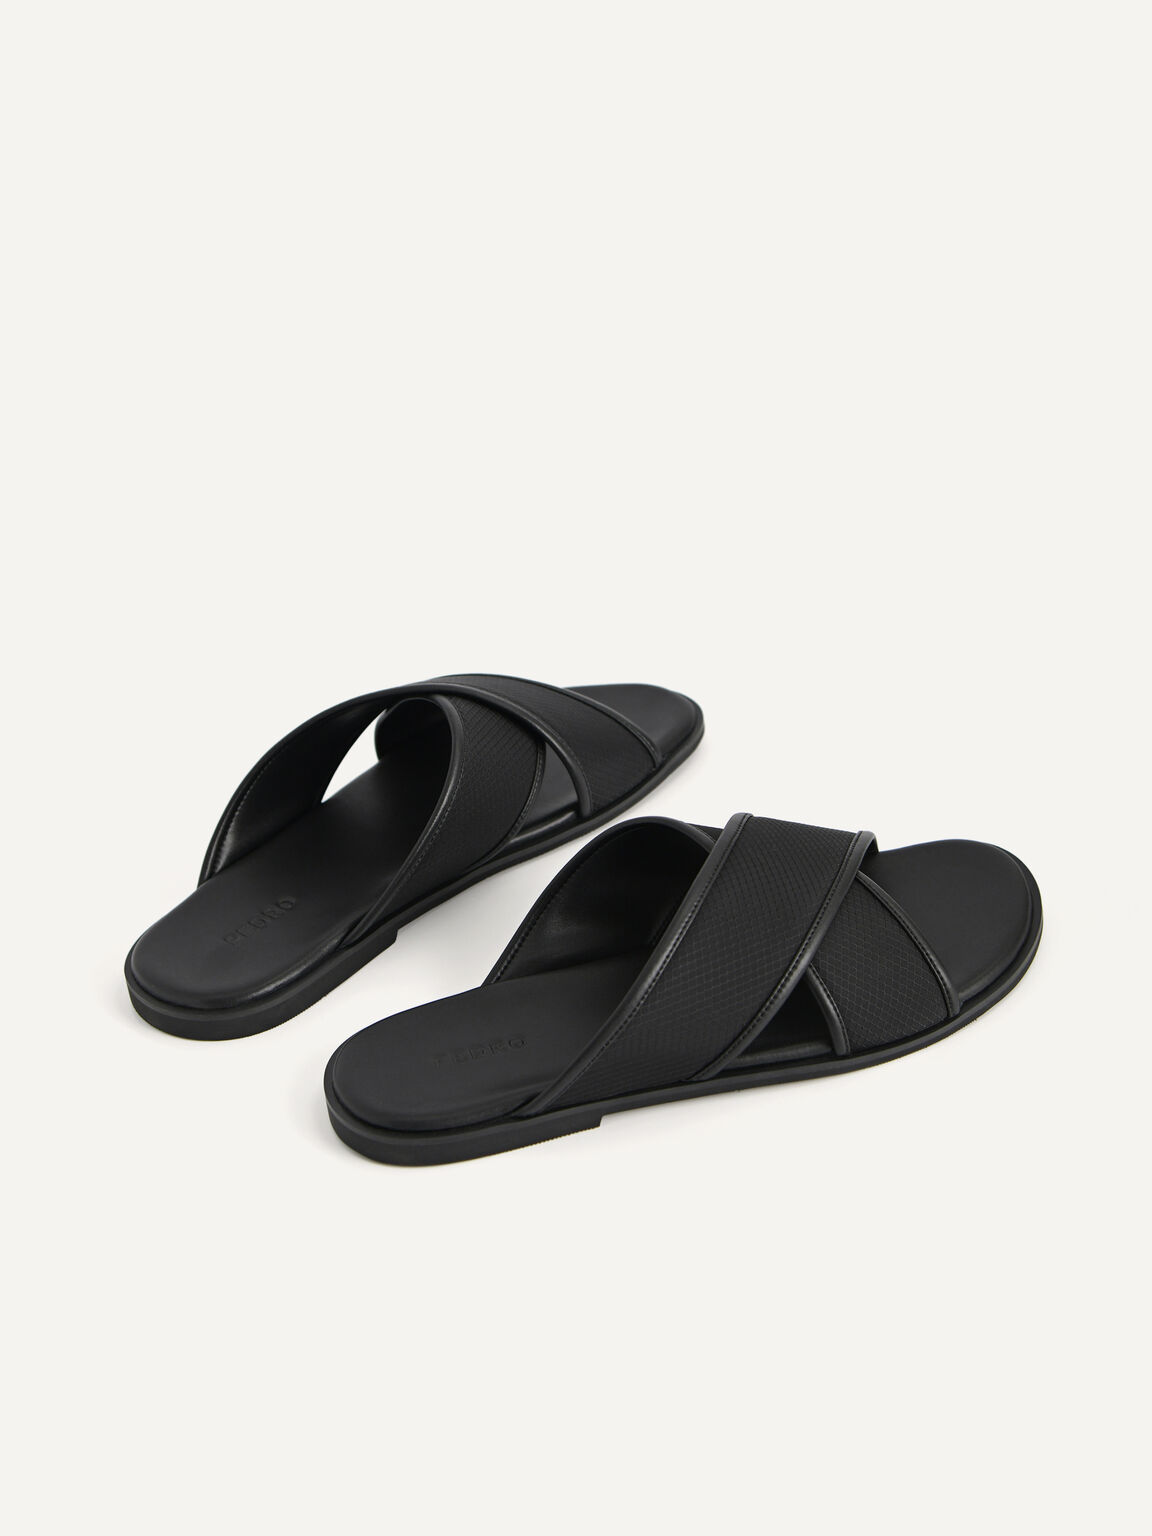 Criss-Cross Strap Sandals, Black, hi-res